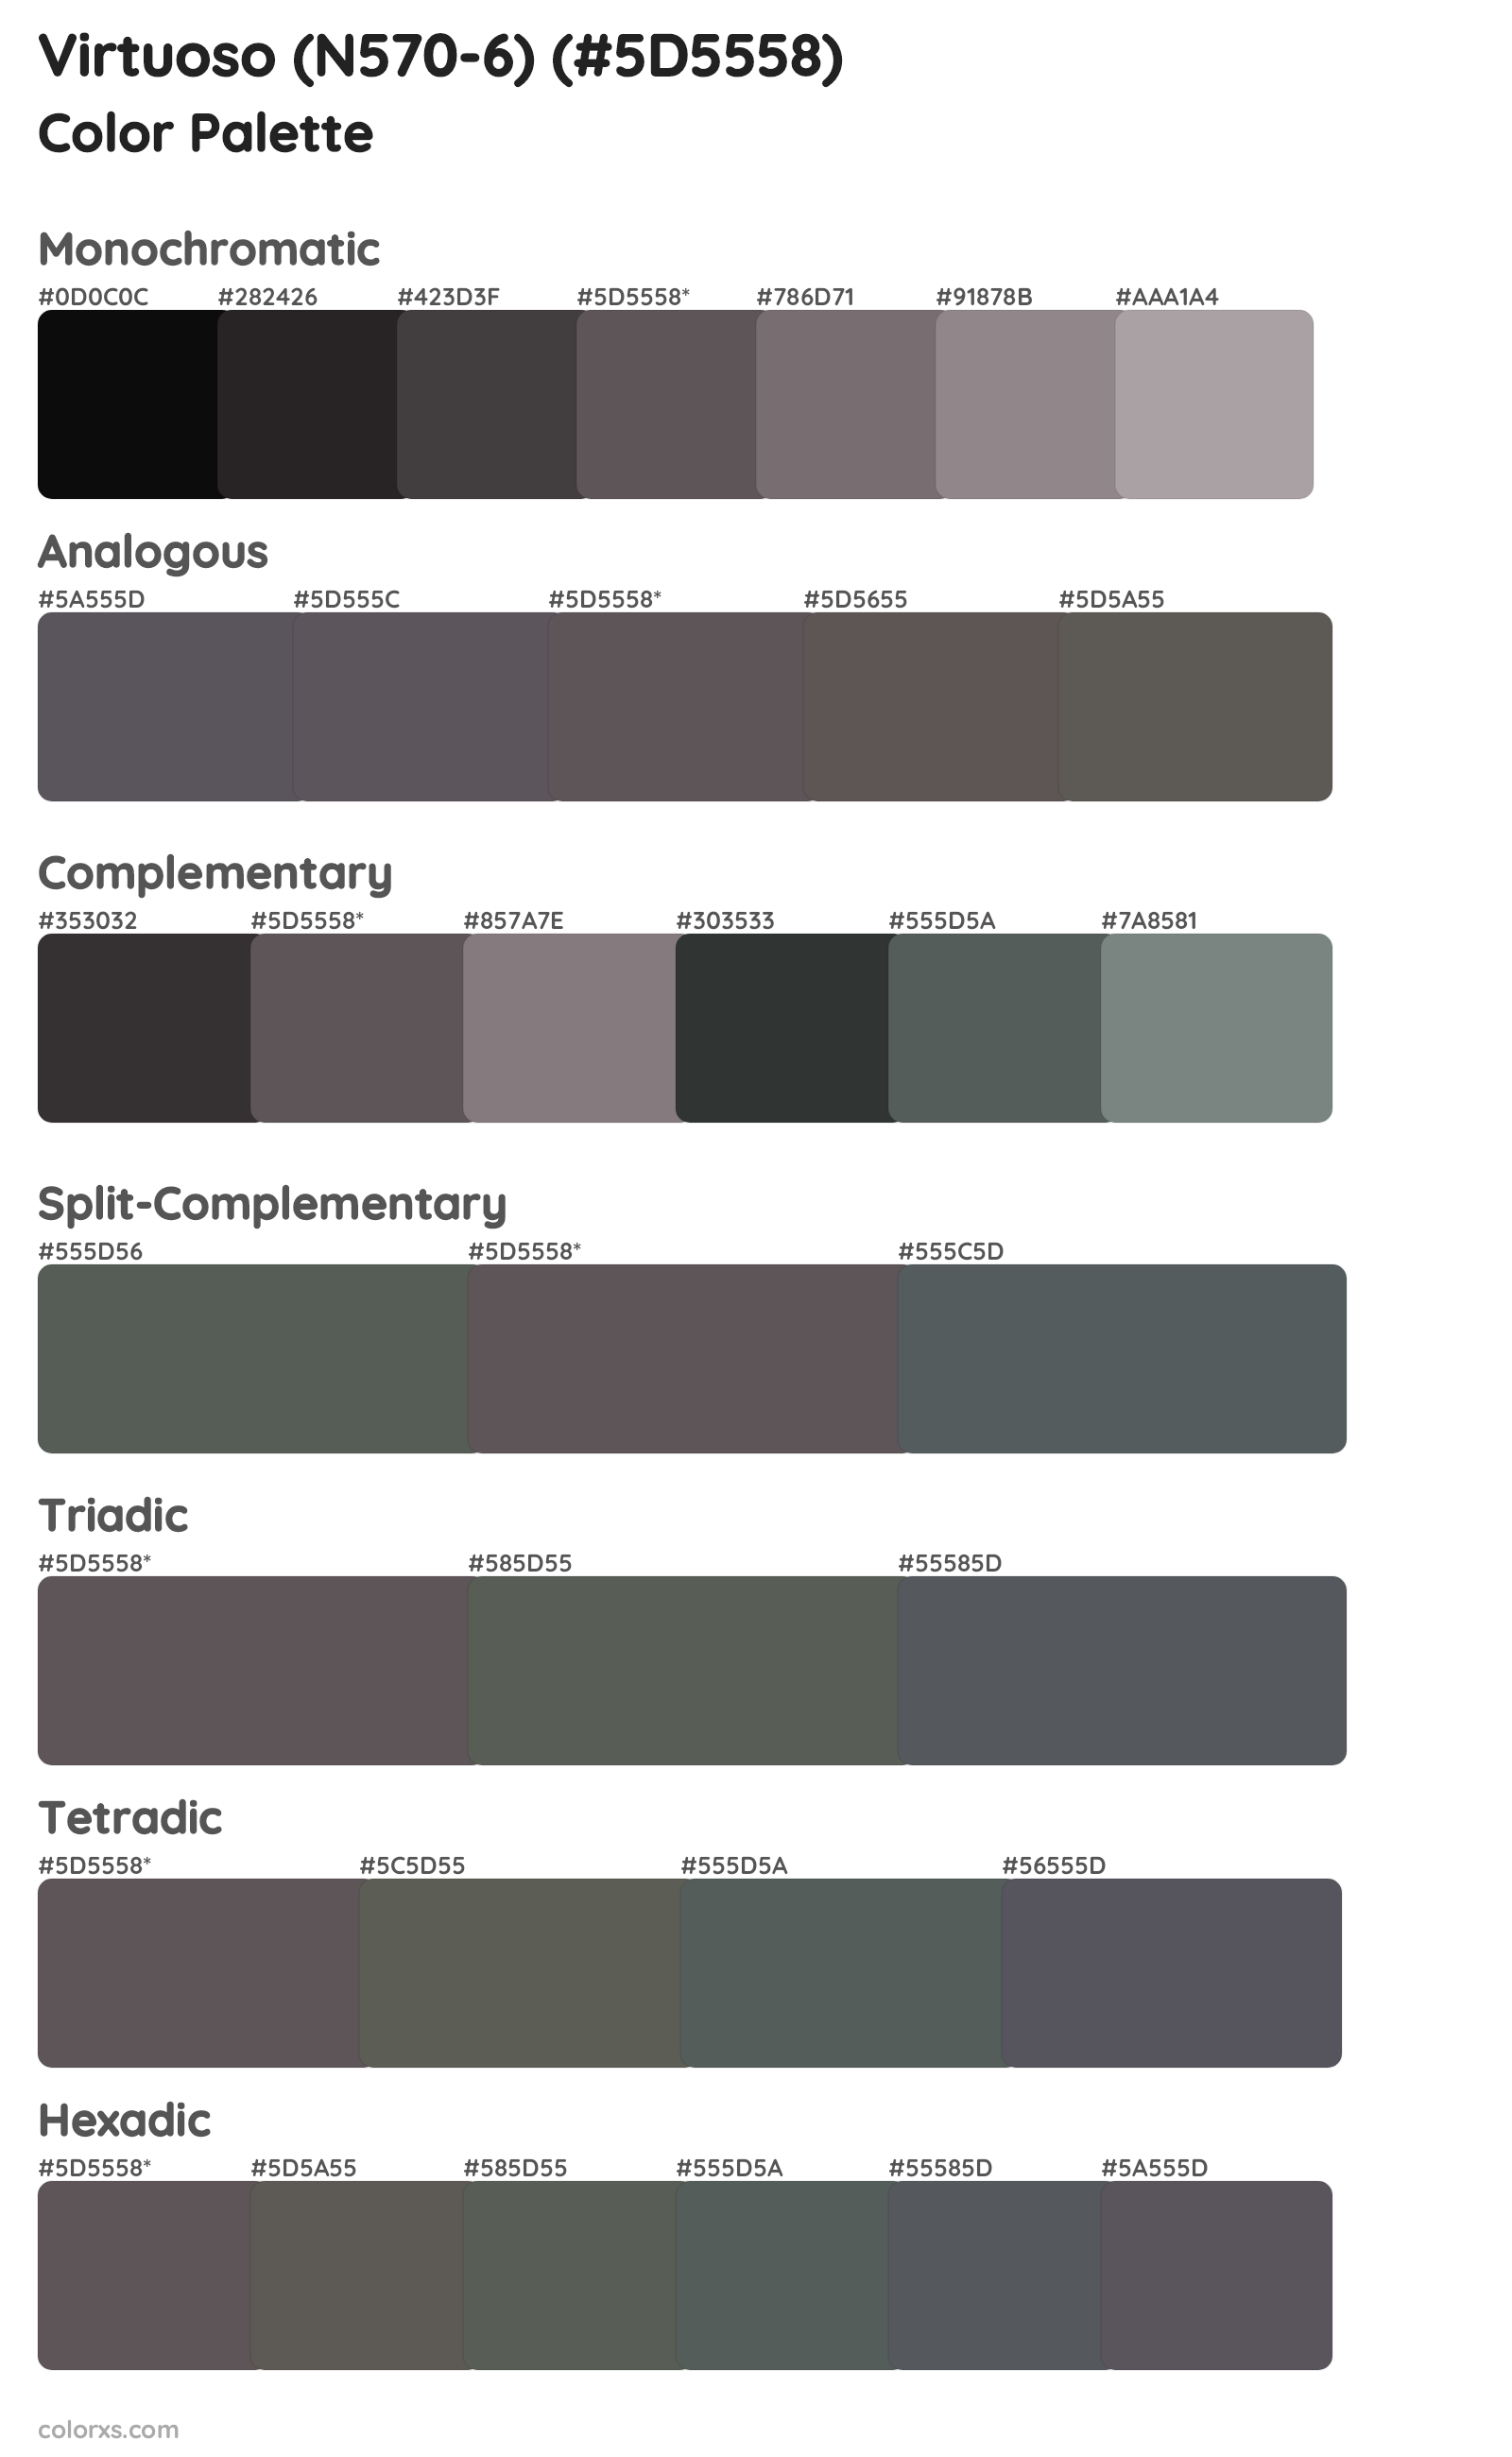 Virtuoso (N570-6) Color Scheme Palettes